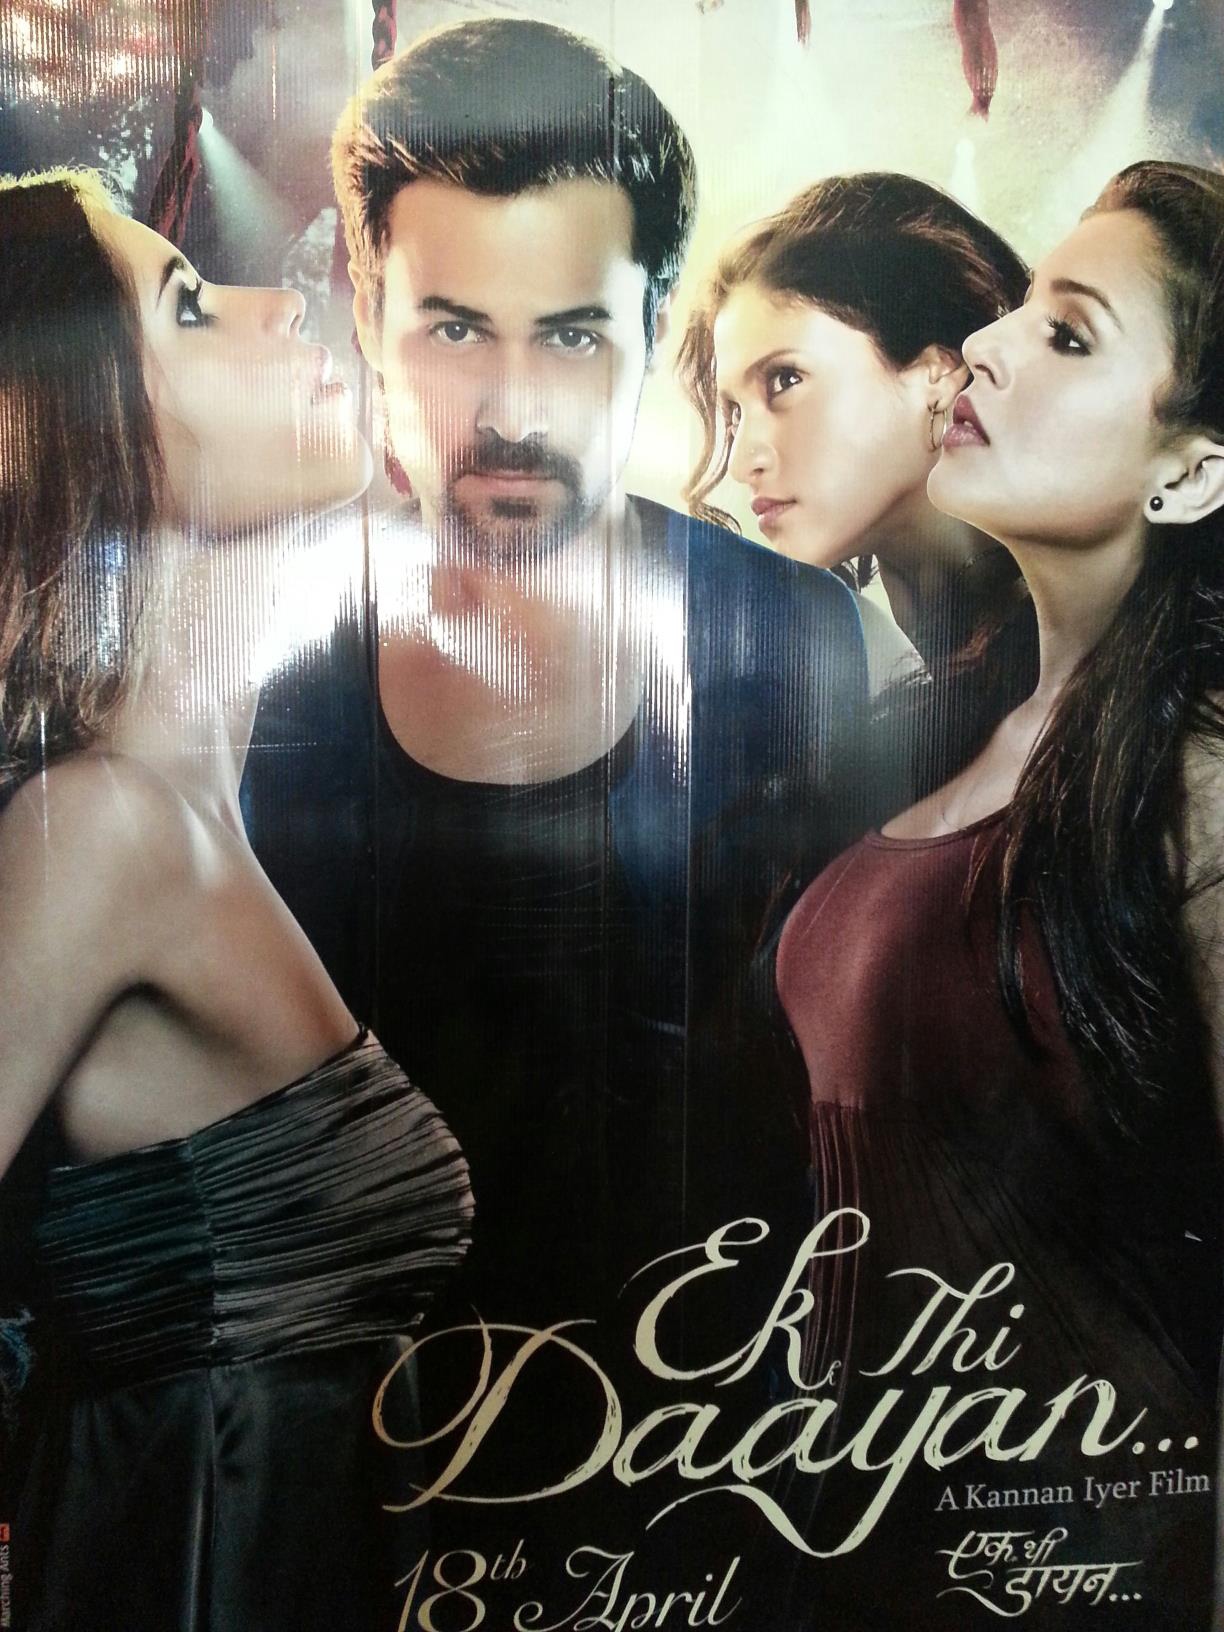 Ek Thi Daayan - Movie Poster #4 (Original)